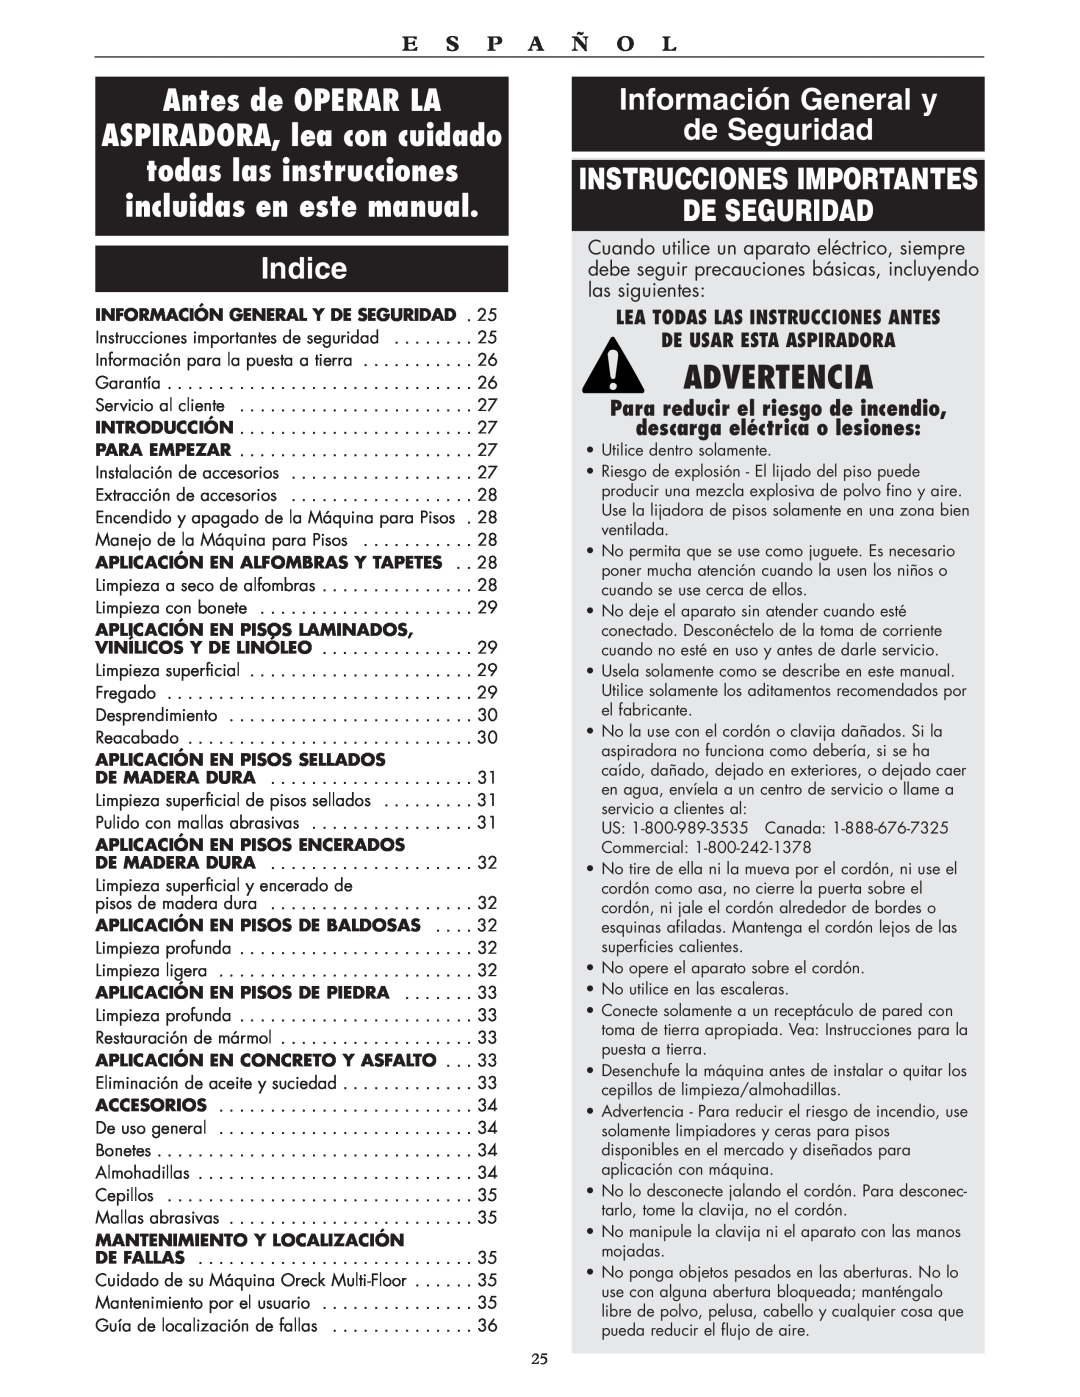 Oreck 550 Advertencia, Indice, Información General y de Seguridad, Instrucciones Importantes De Seguridad, E S P A Ñ O L 